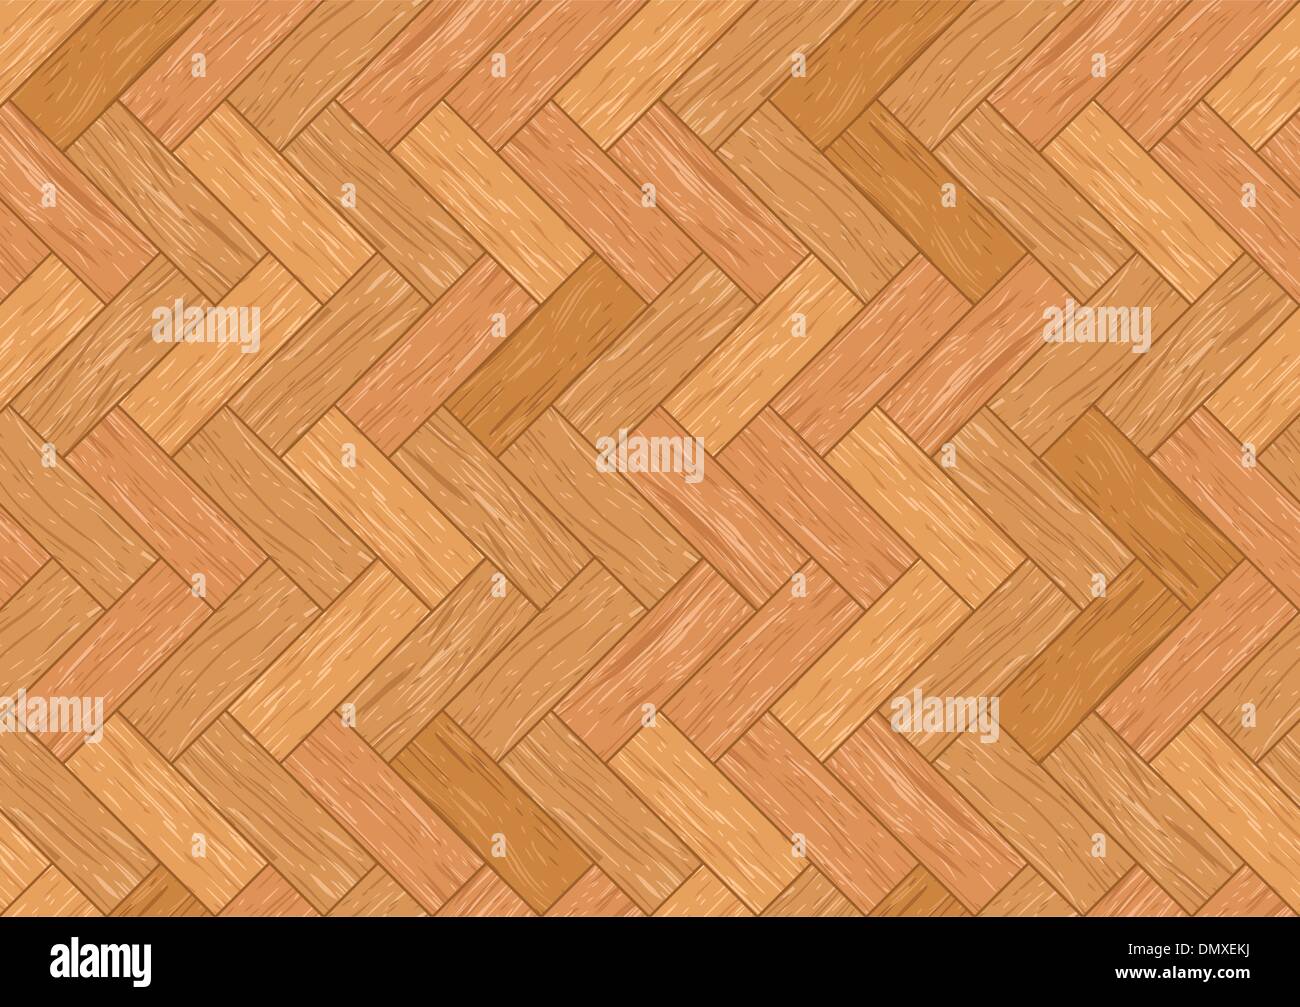 Wooden texture Stock Vector